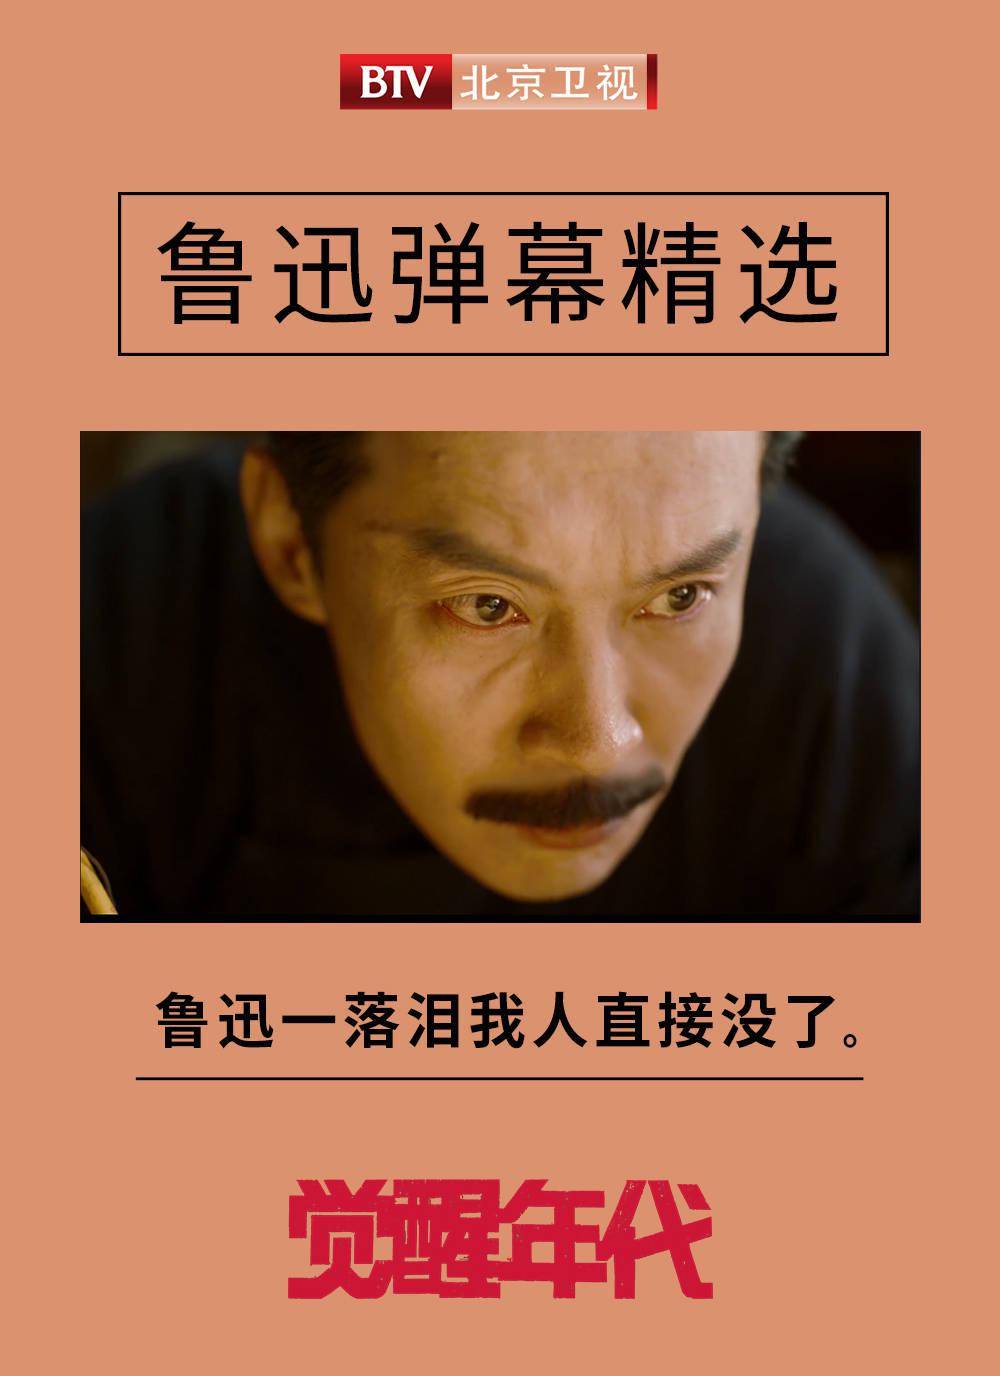 北京卫视《觉醒年代》鲁迅一落泪,我人直接没了